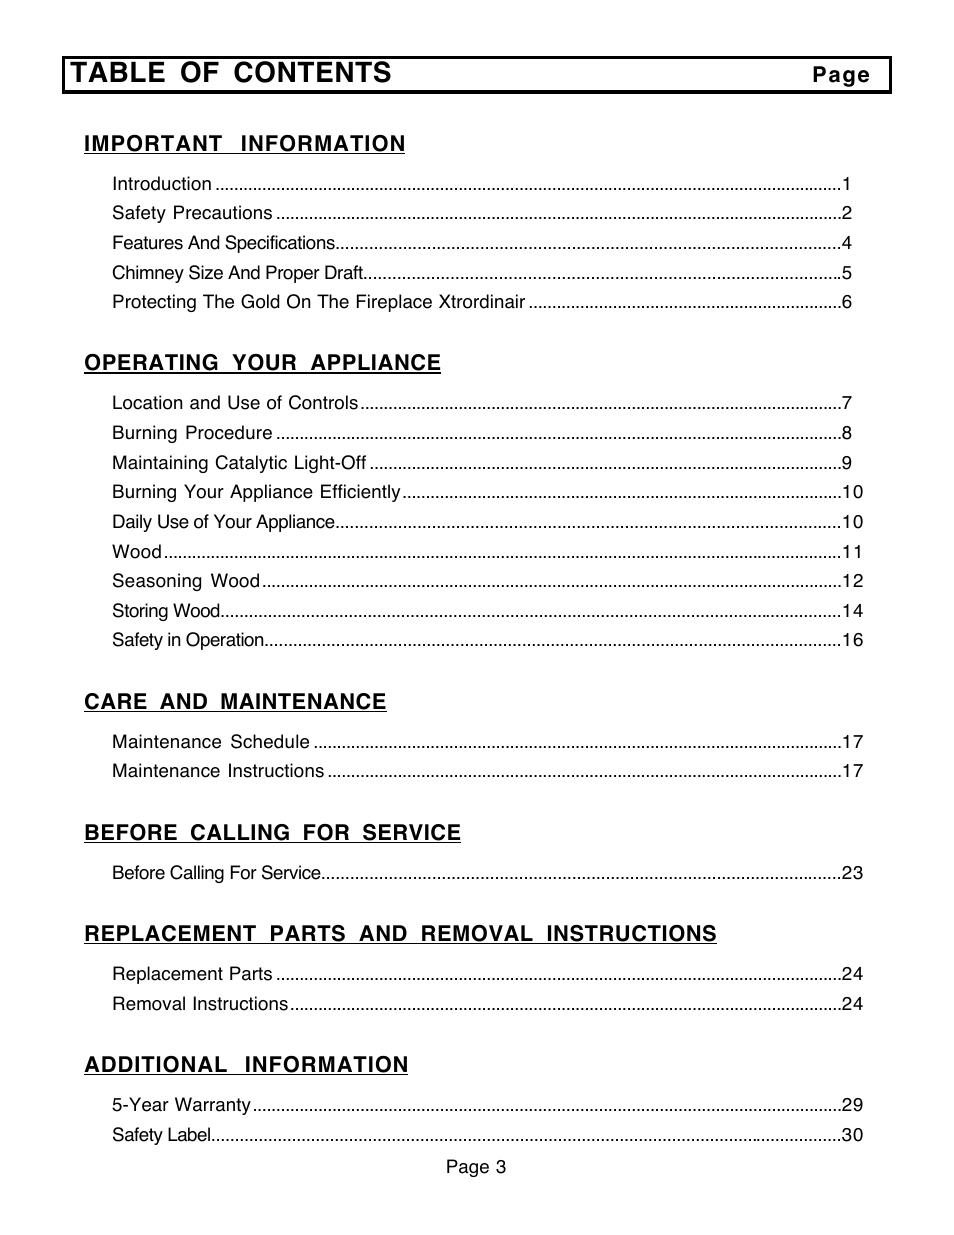 FireplaceXtrordinair 36A-BI User Manual | Page 3 / 30